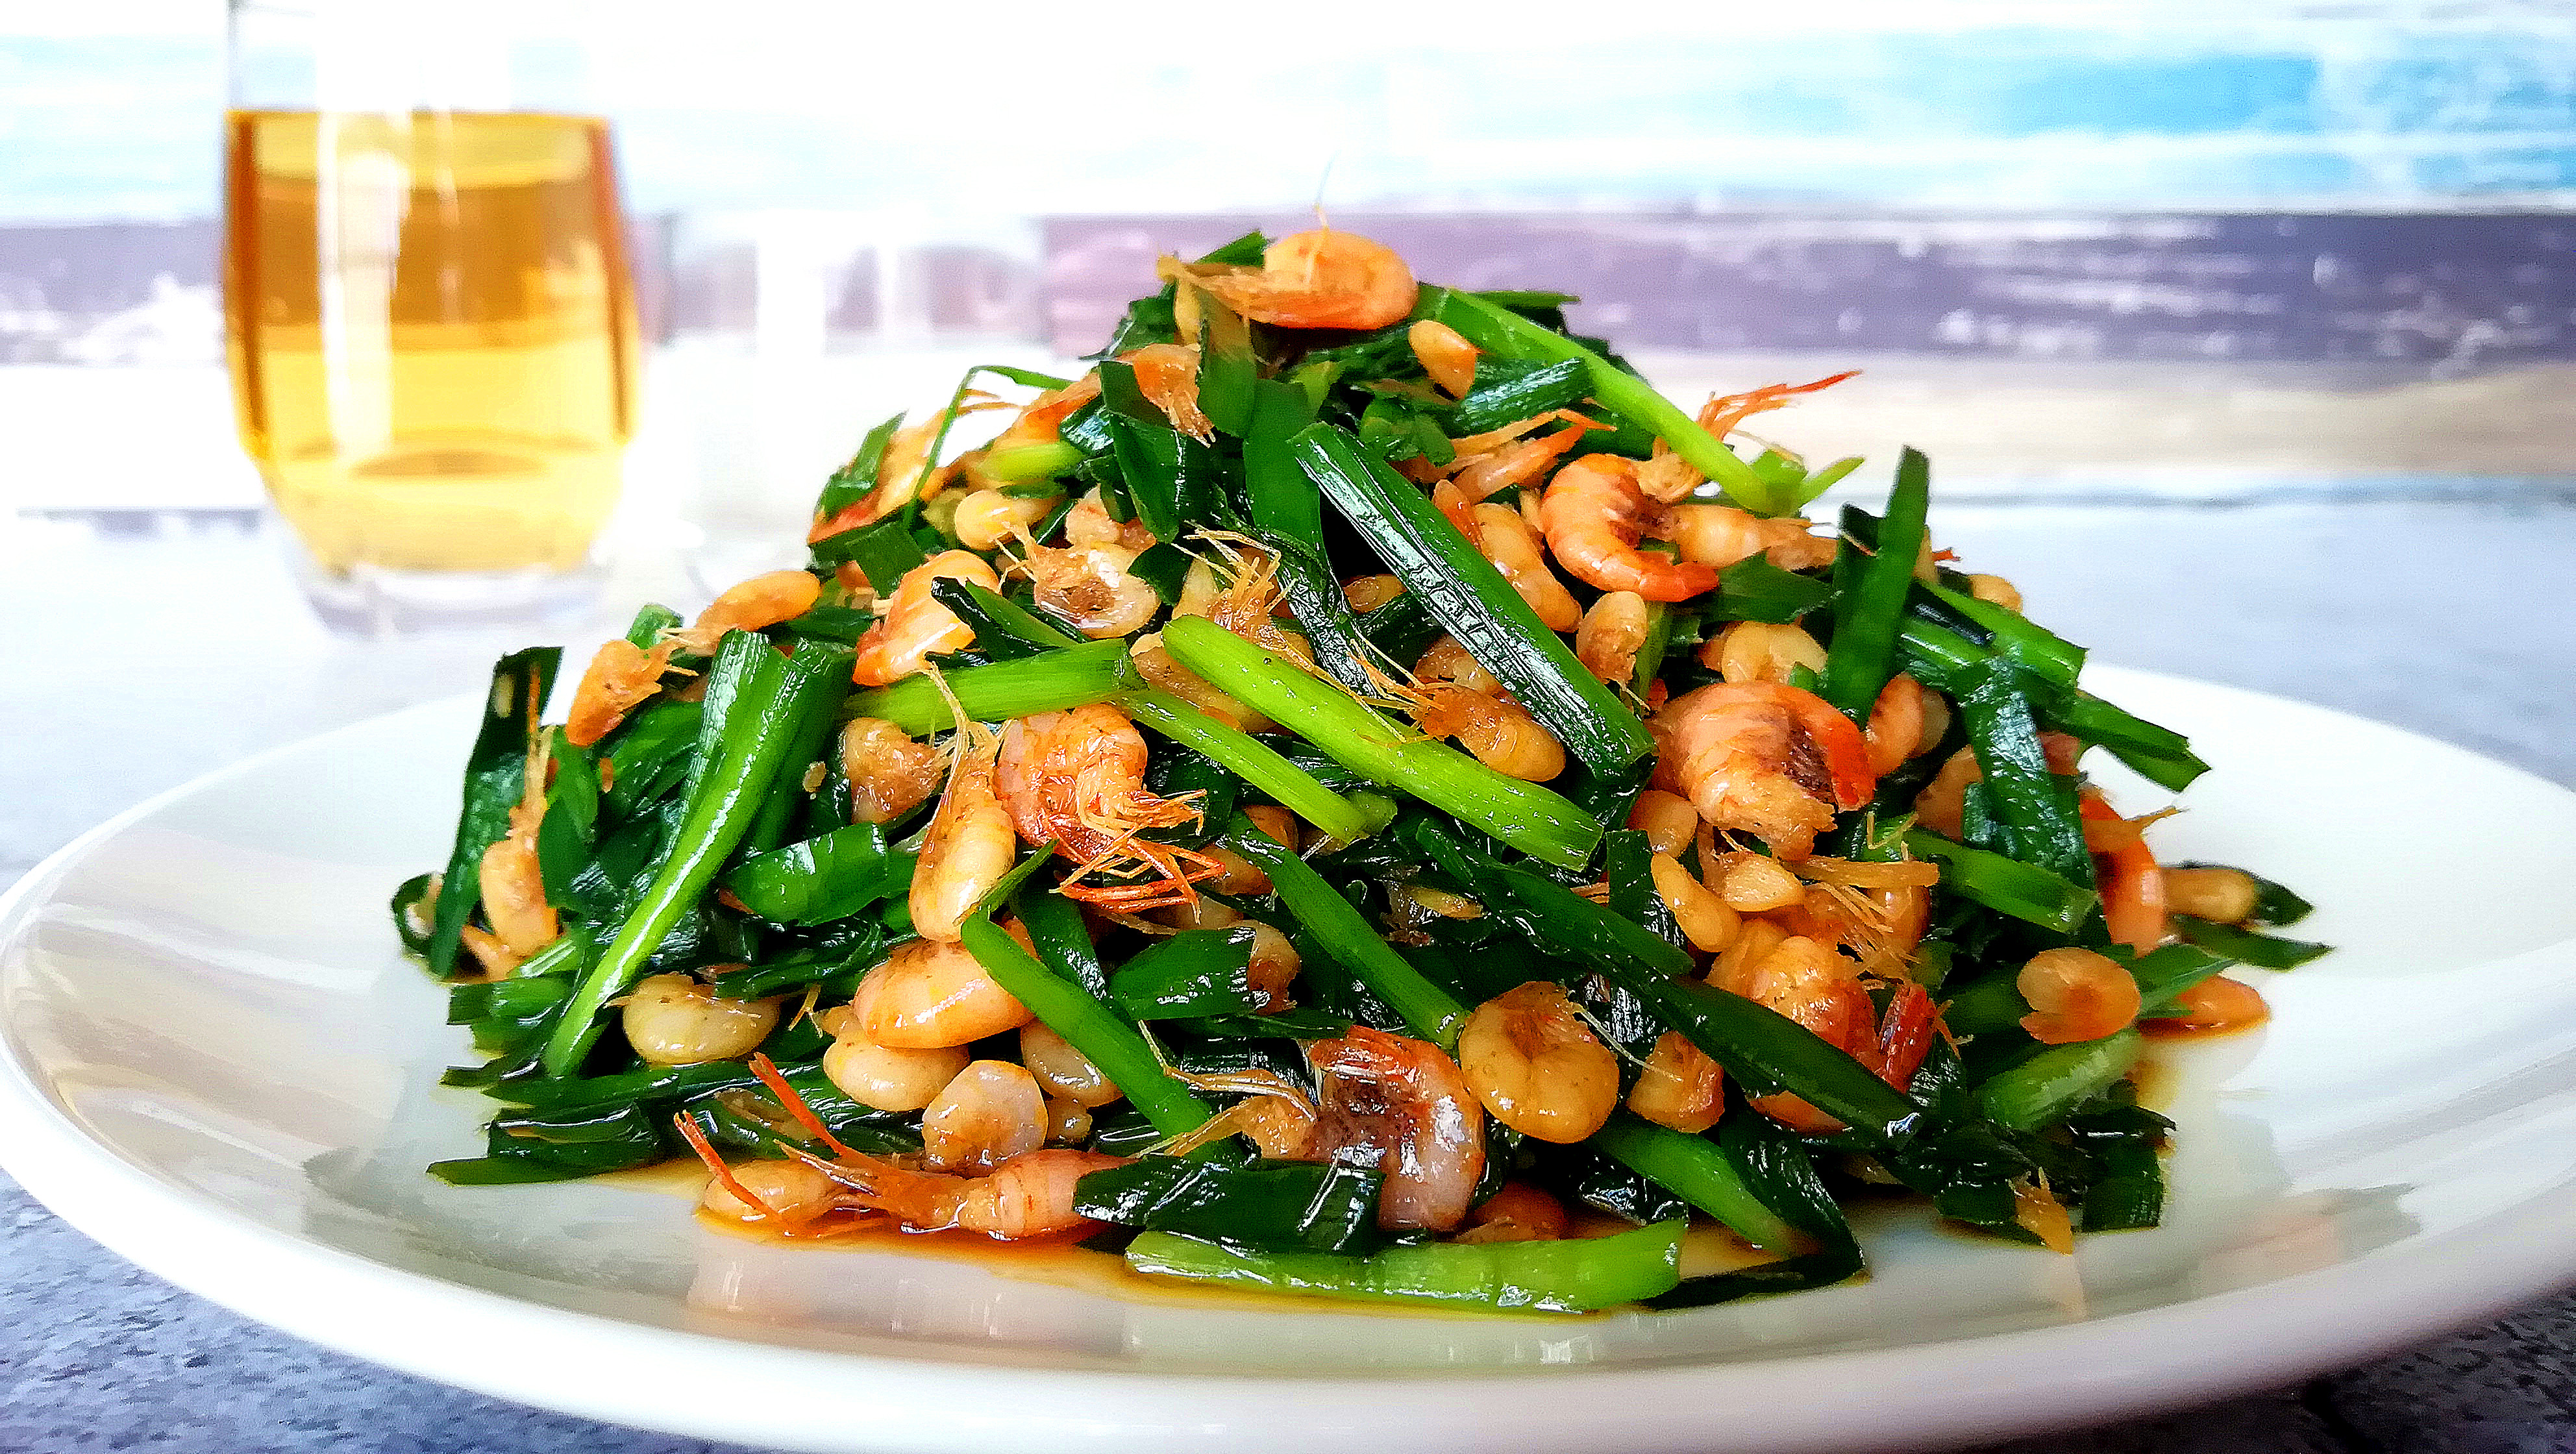 首先食材准备:主要食材:河虾500克,韭菜1把主要调料:干辣椒,鸡精,盐